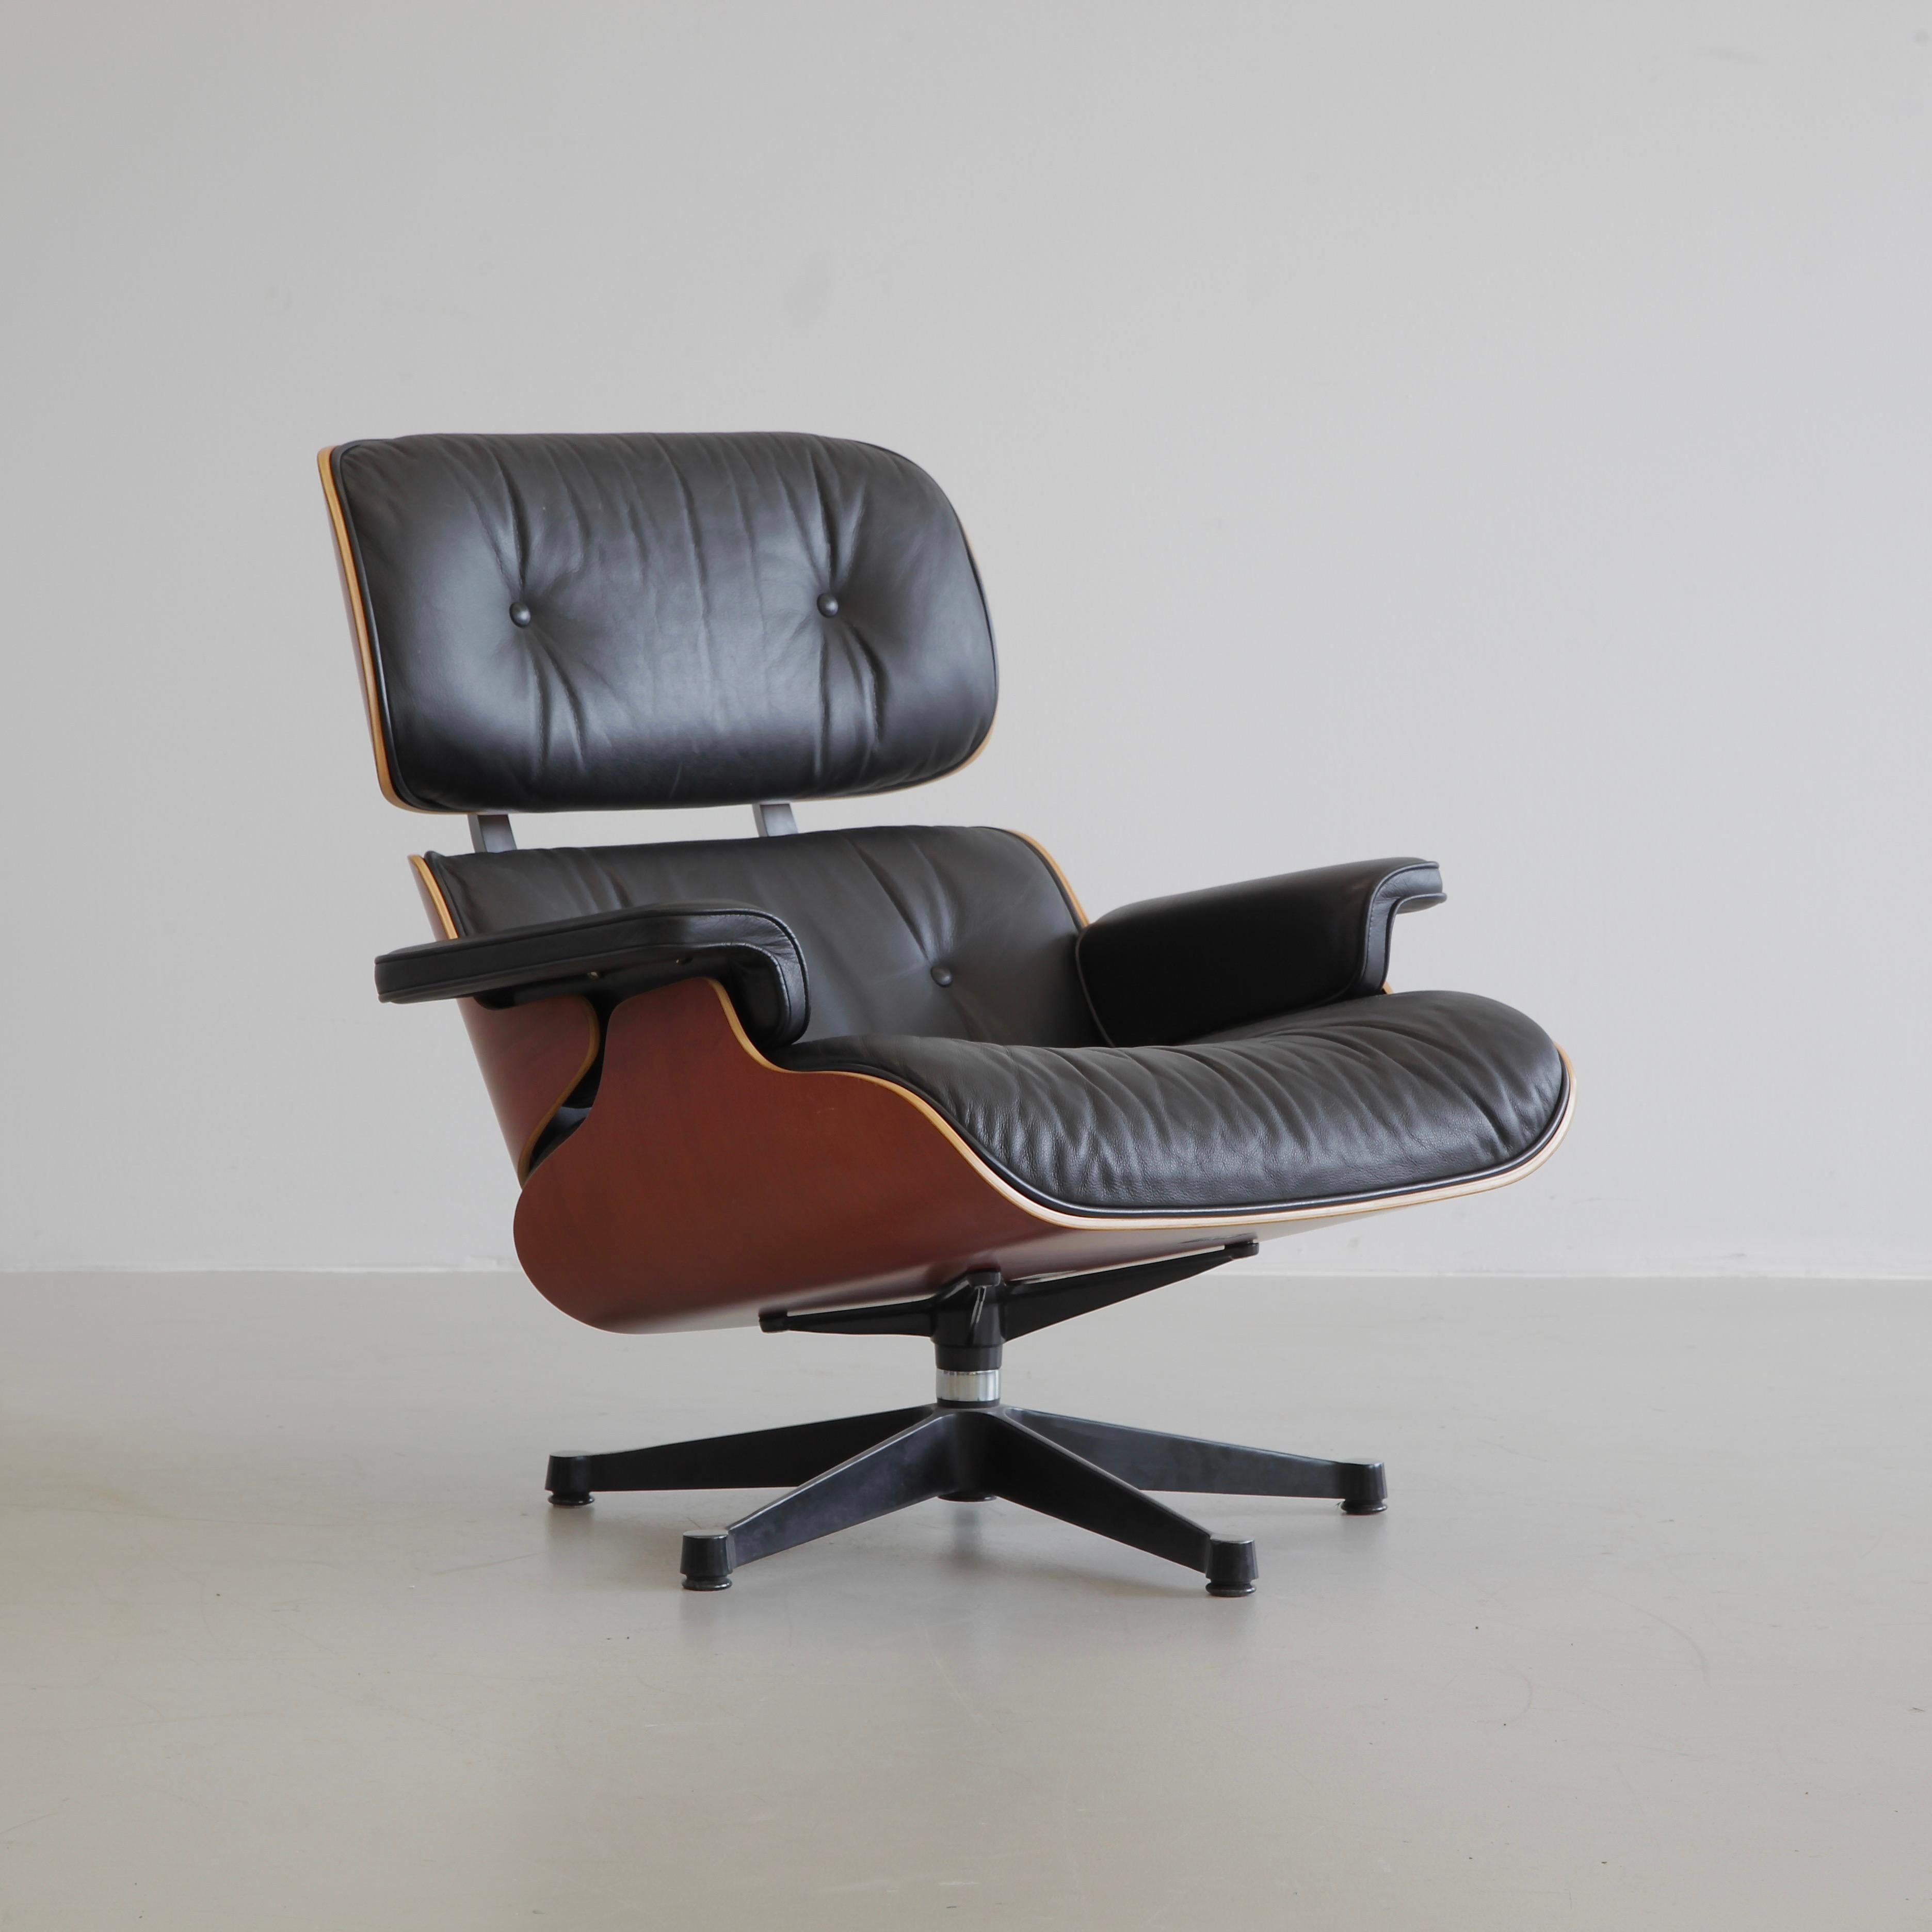 Fin du 20e siècle Charles & Ray Eames fauteuil de salon et repose-pieds, Vitra 1999